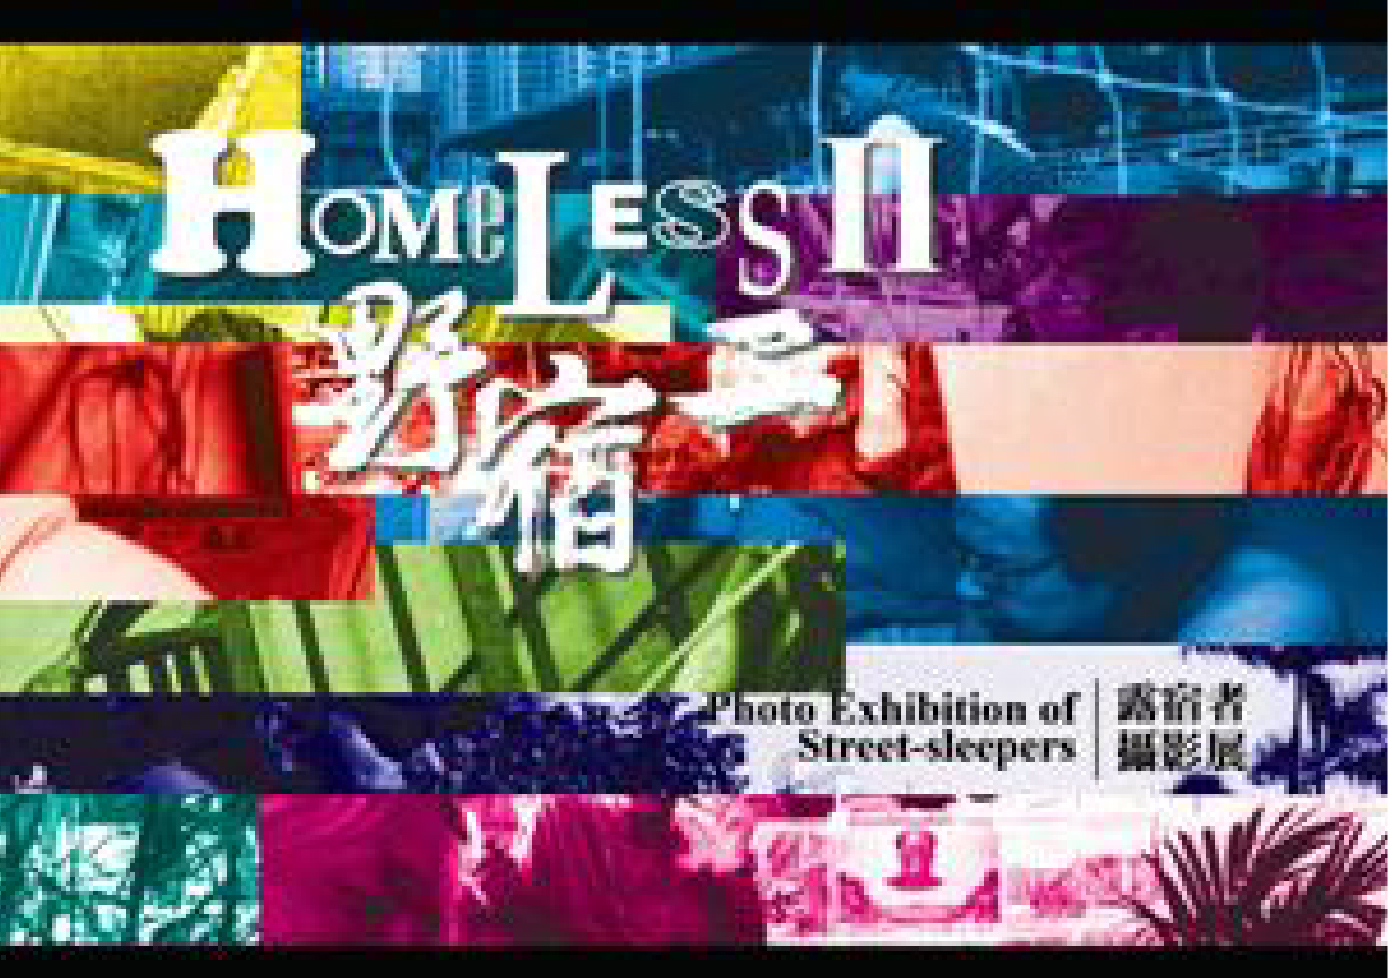 Homeless II – Photo Exhibition of Street-sleepers